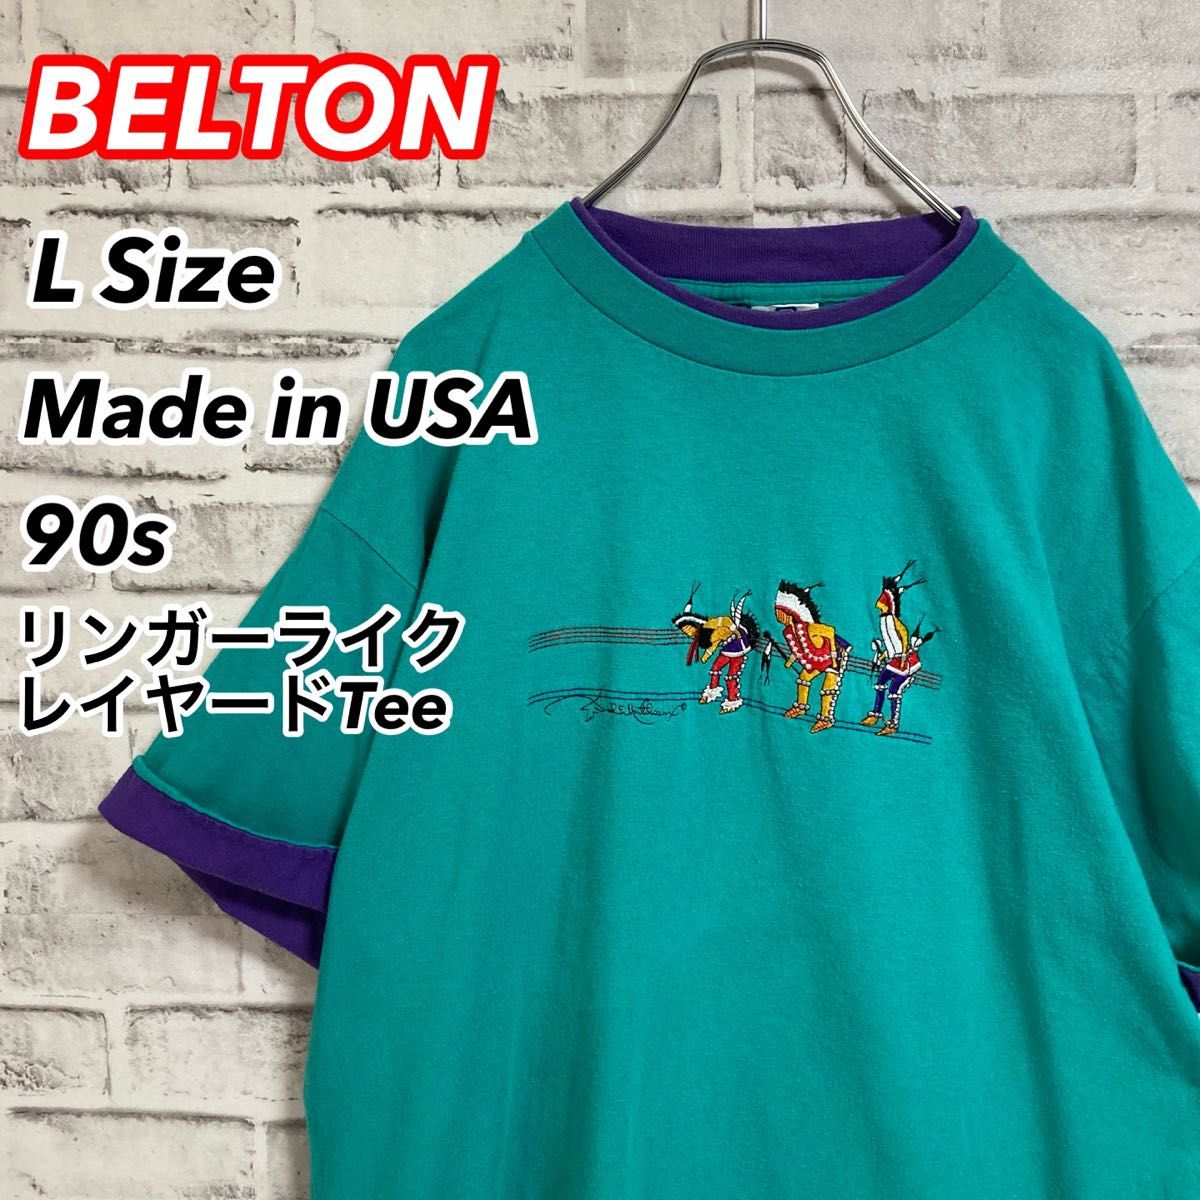 激レアレイヤードTee★USA製 リンガー ライク Tシャツ 90s 刺繍 ツートン vintage アメリカ USA 古着